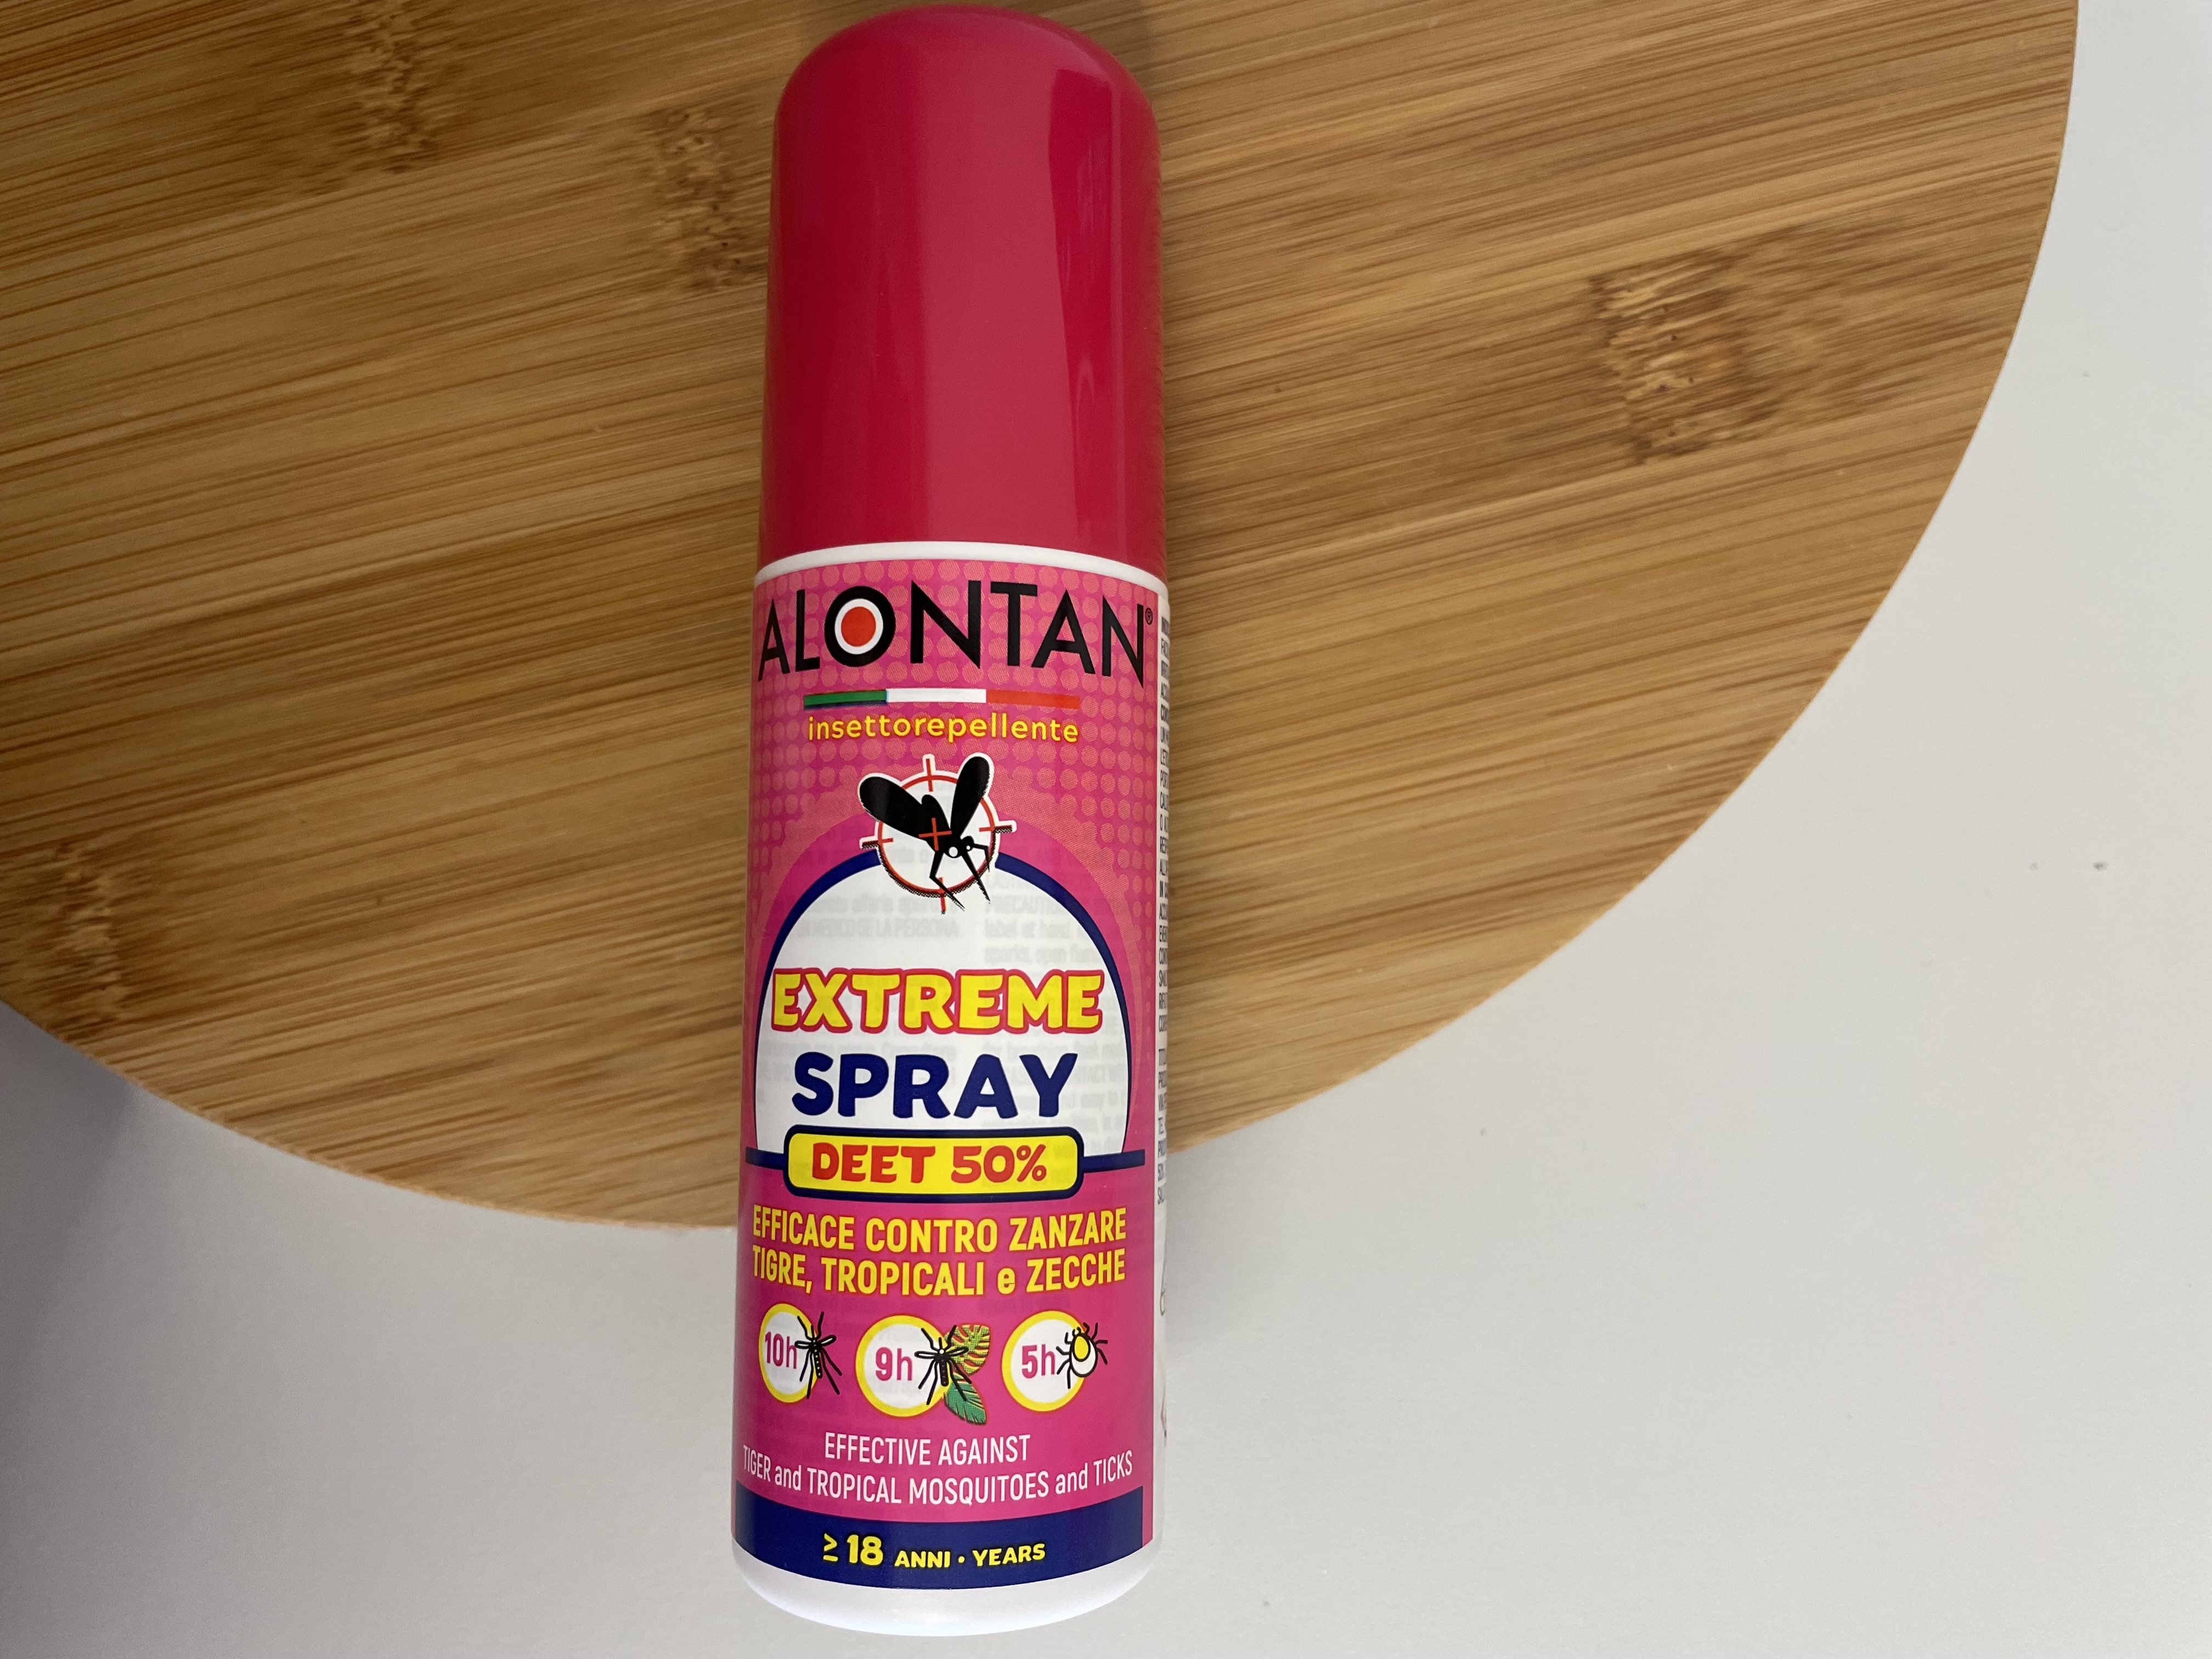 Alontan: Extreme Spray